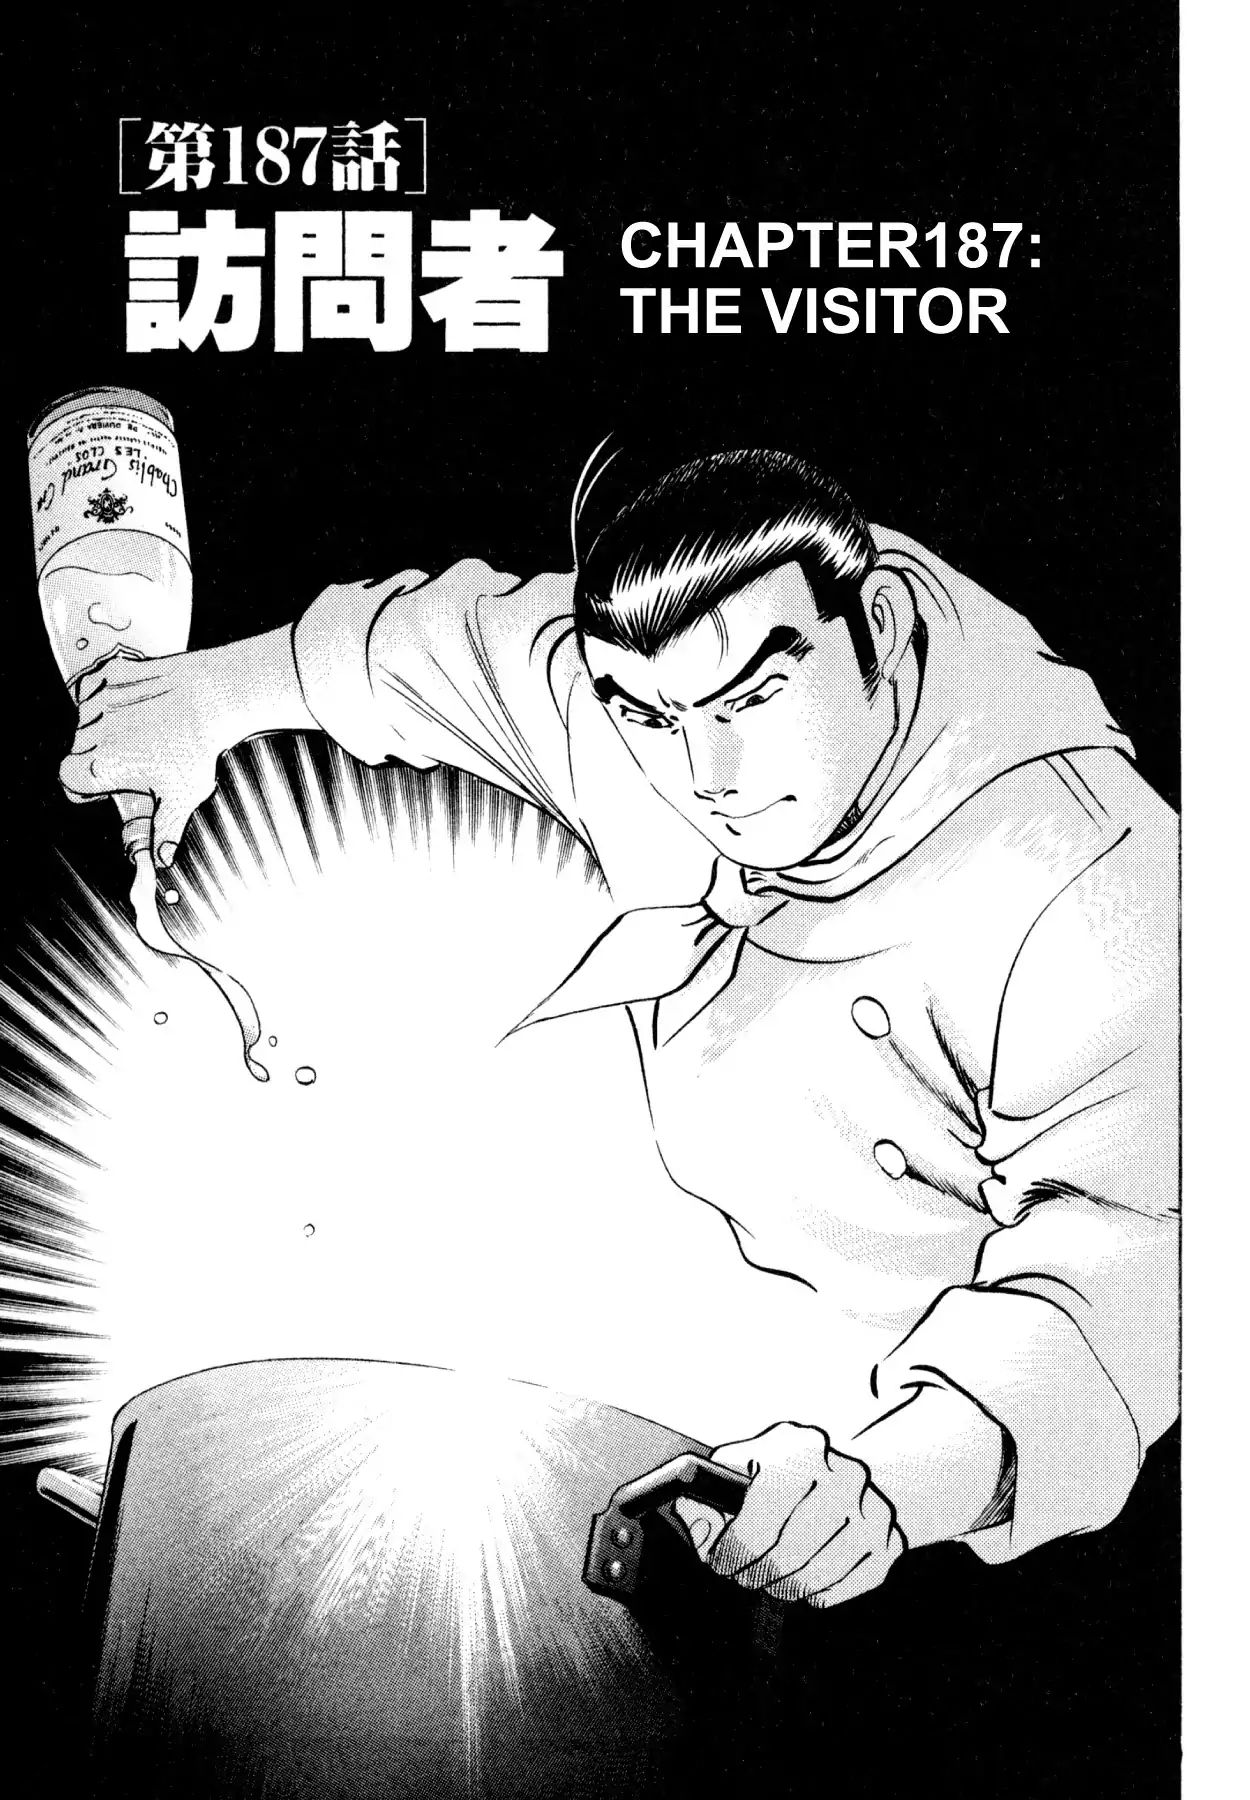 Shoku King VOL.21 CHAPTER 187: THE VISITOR